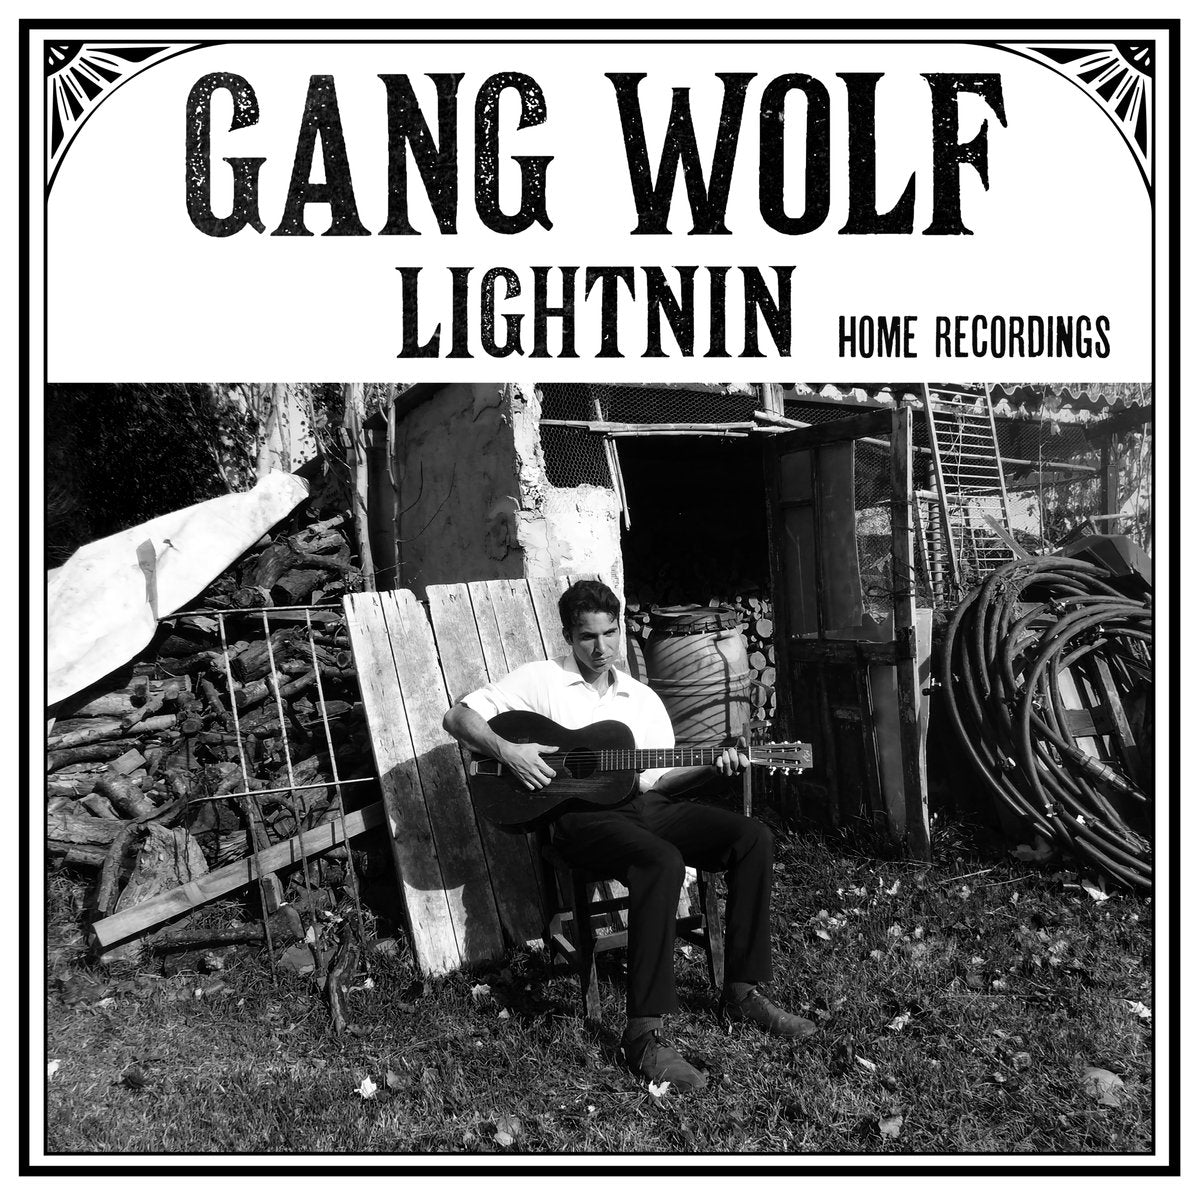 Gang Wolf Lightnin' - Home Recordings |  Vinyl LP | Gang Wolf Lightnin' - Home Recordings (LP) | Records on Vinyl